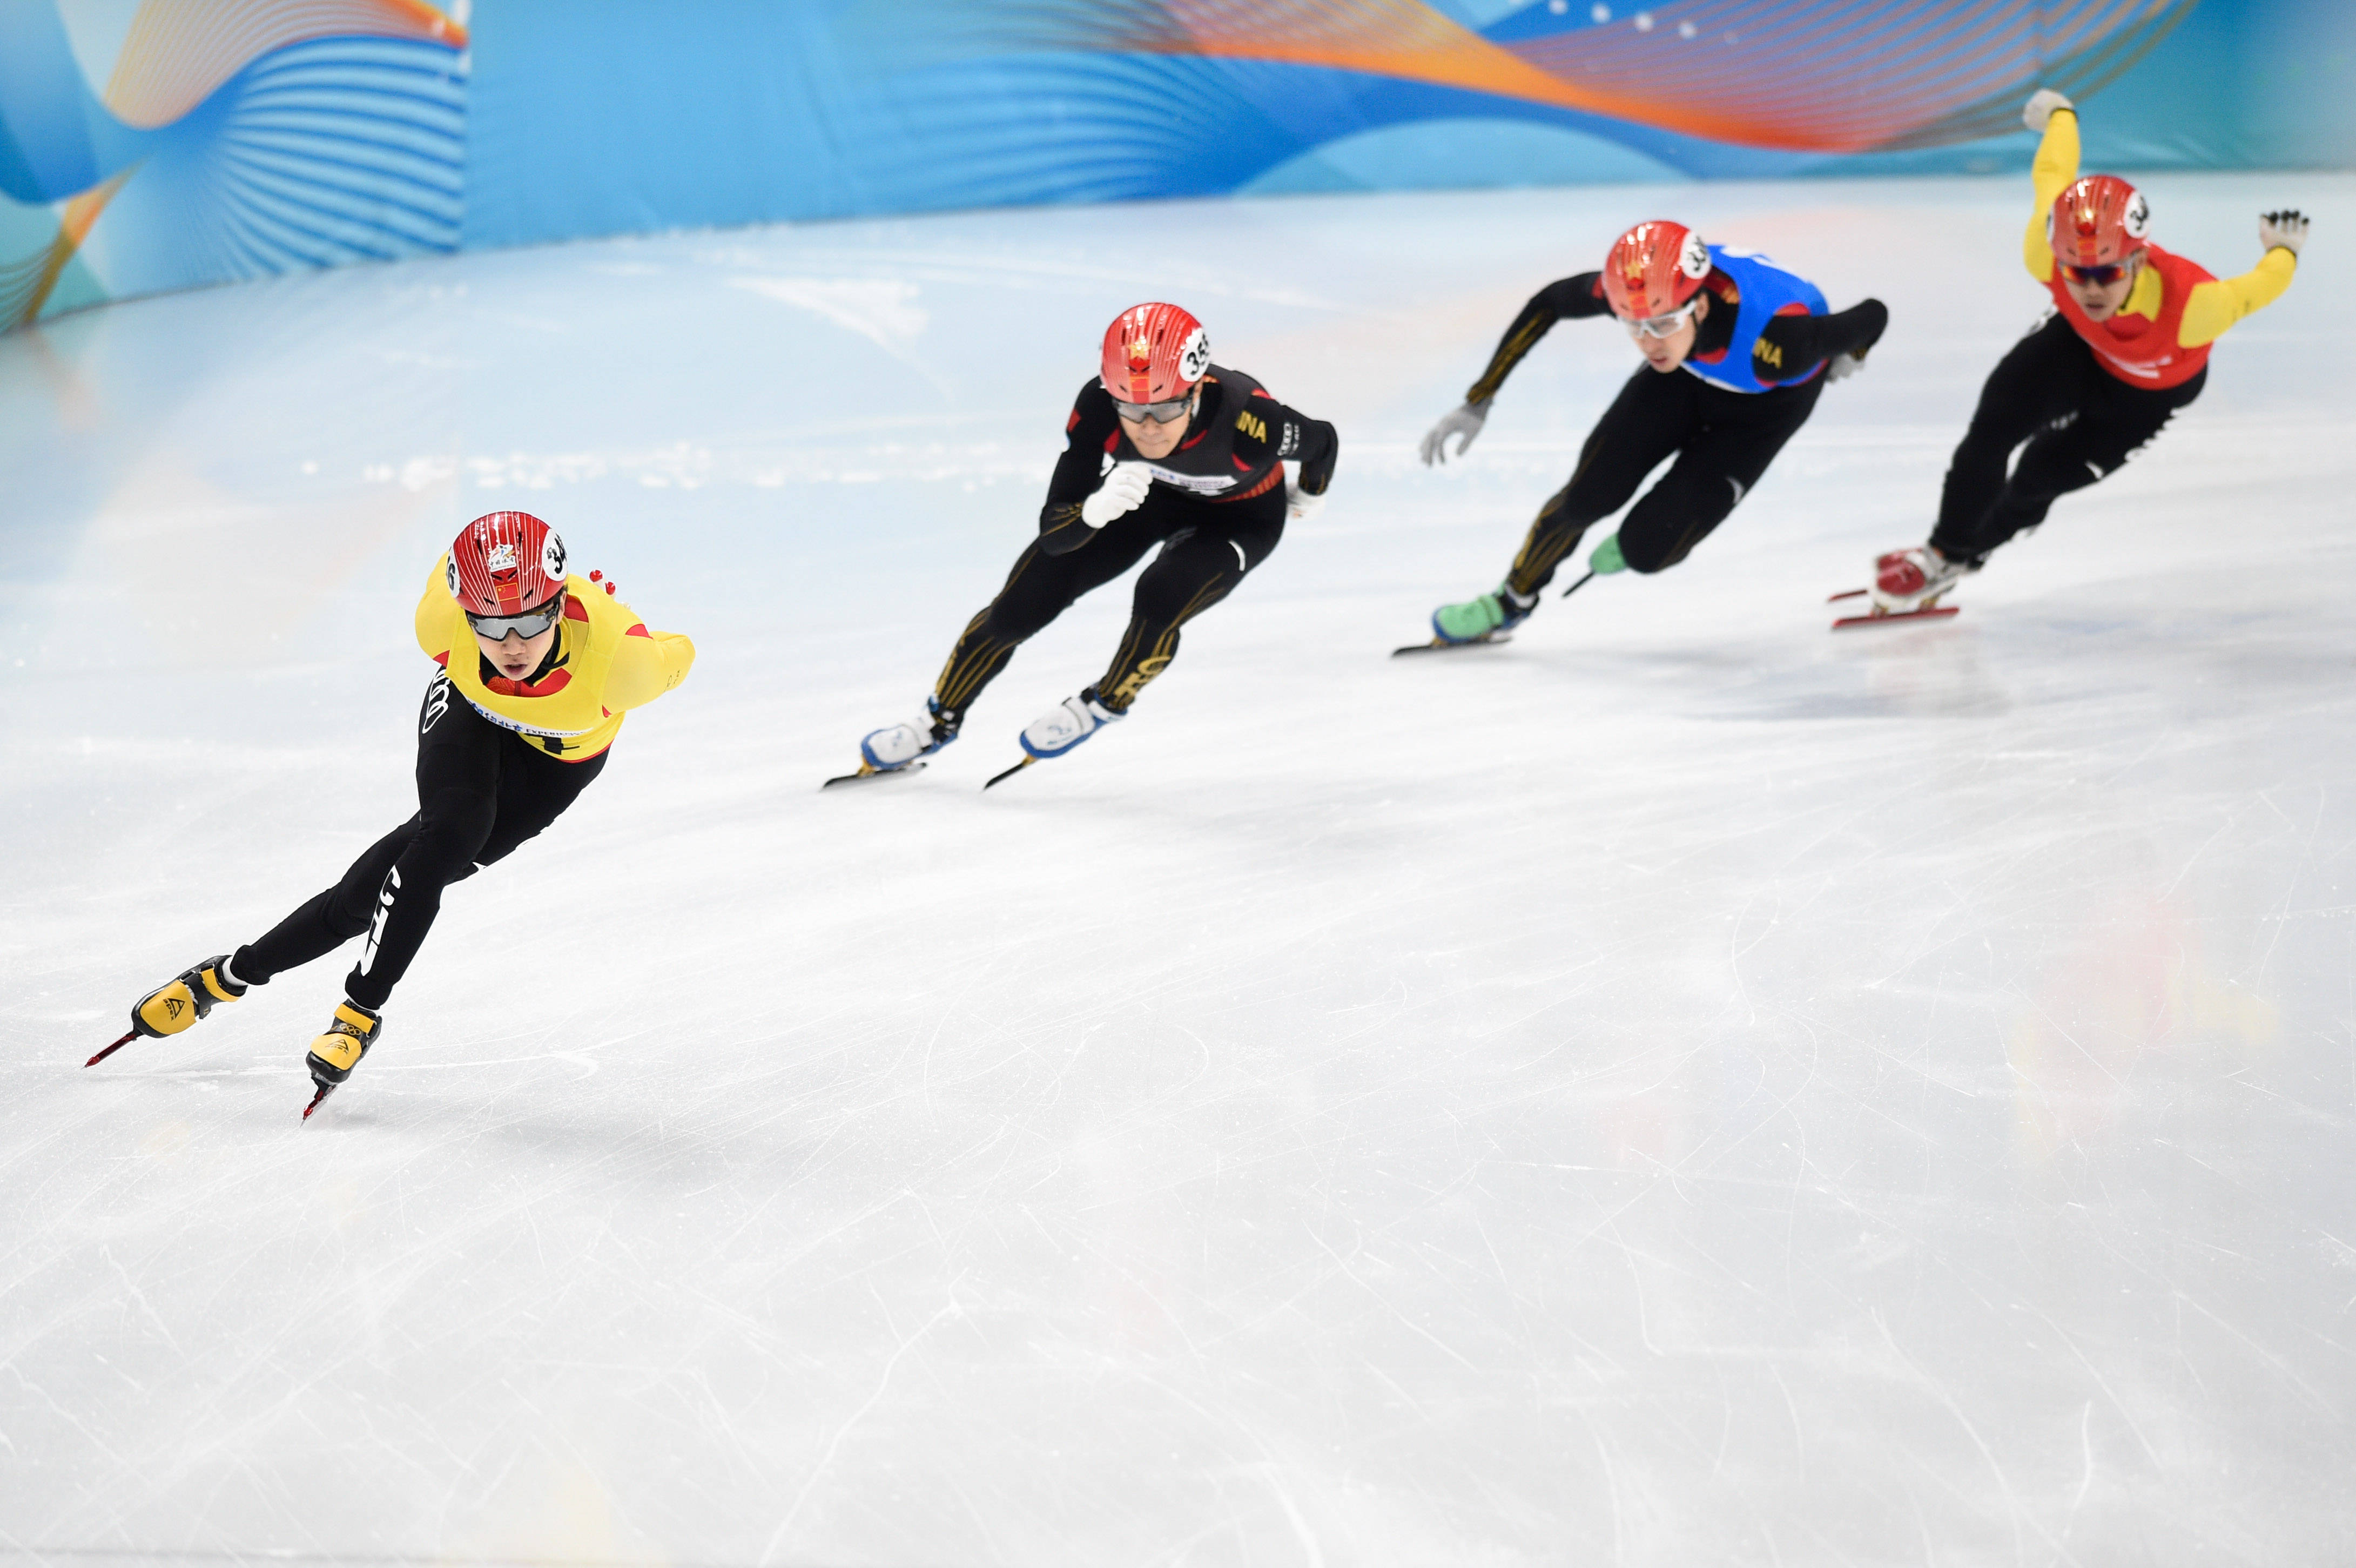 短道速滑"相约北京"冰上测试活动短道速滑比赛落幕